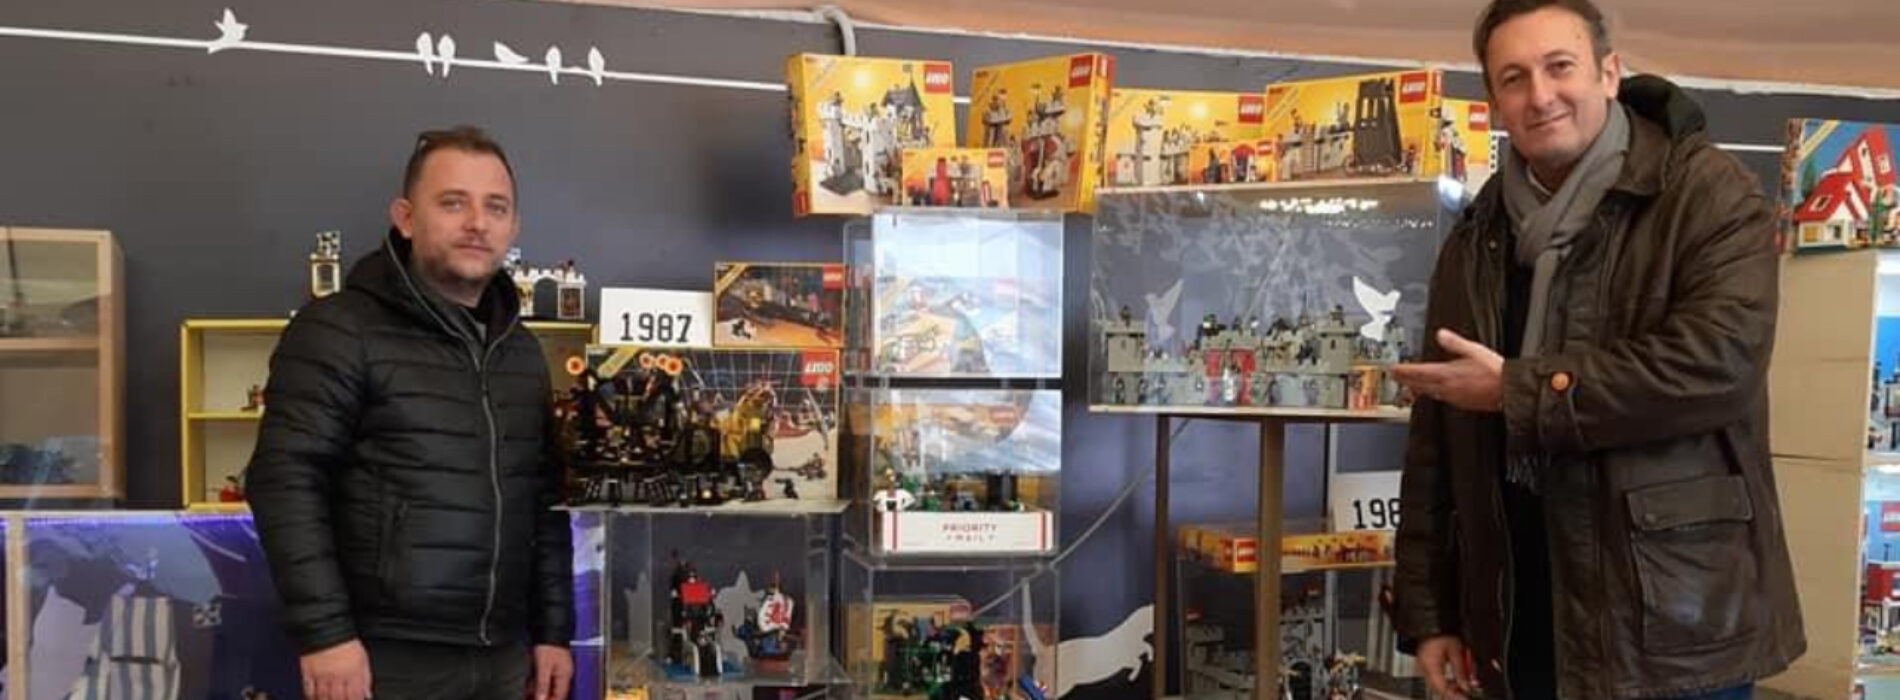 I mattoncini Lego in mostra a Caserta, profumo di gioco e d’infanzia